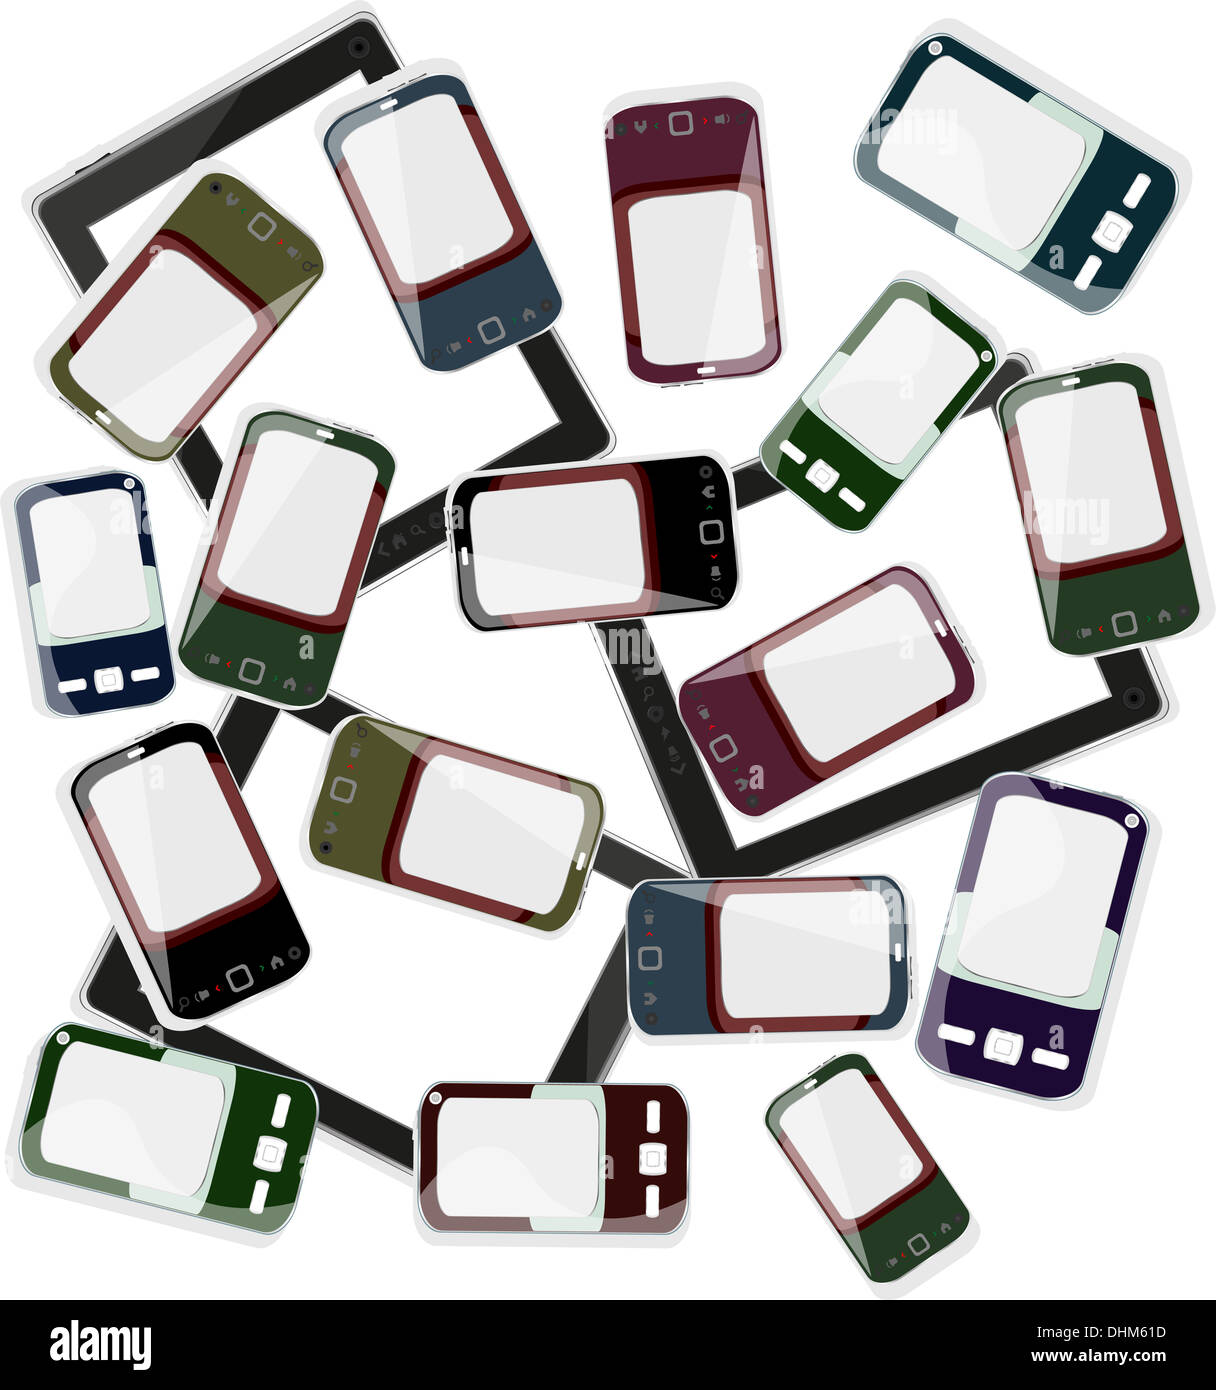 smart phones set on white background Stock Photo